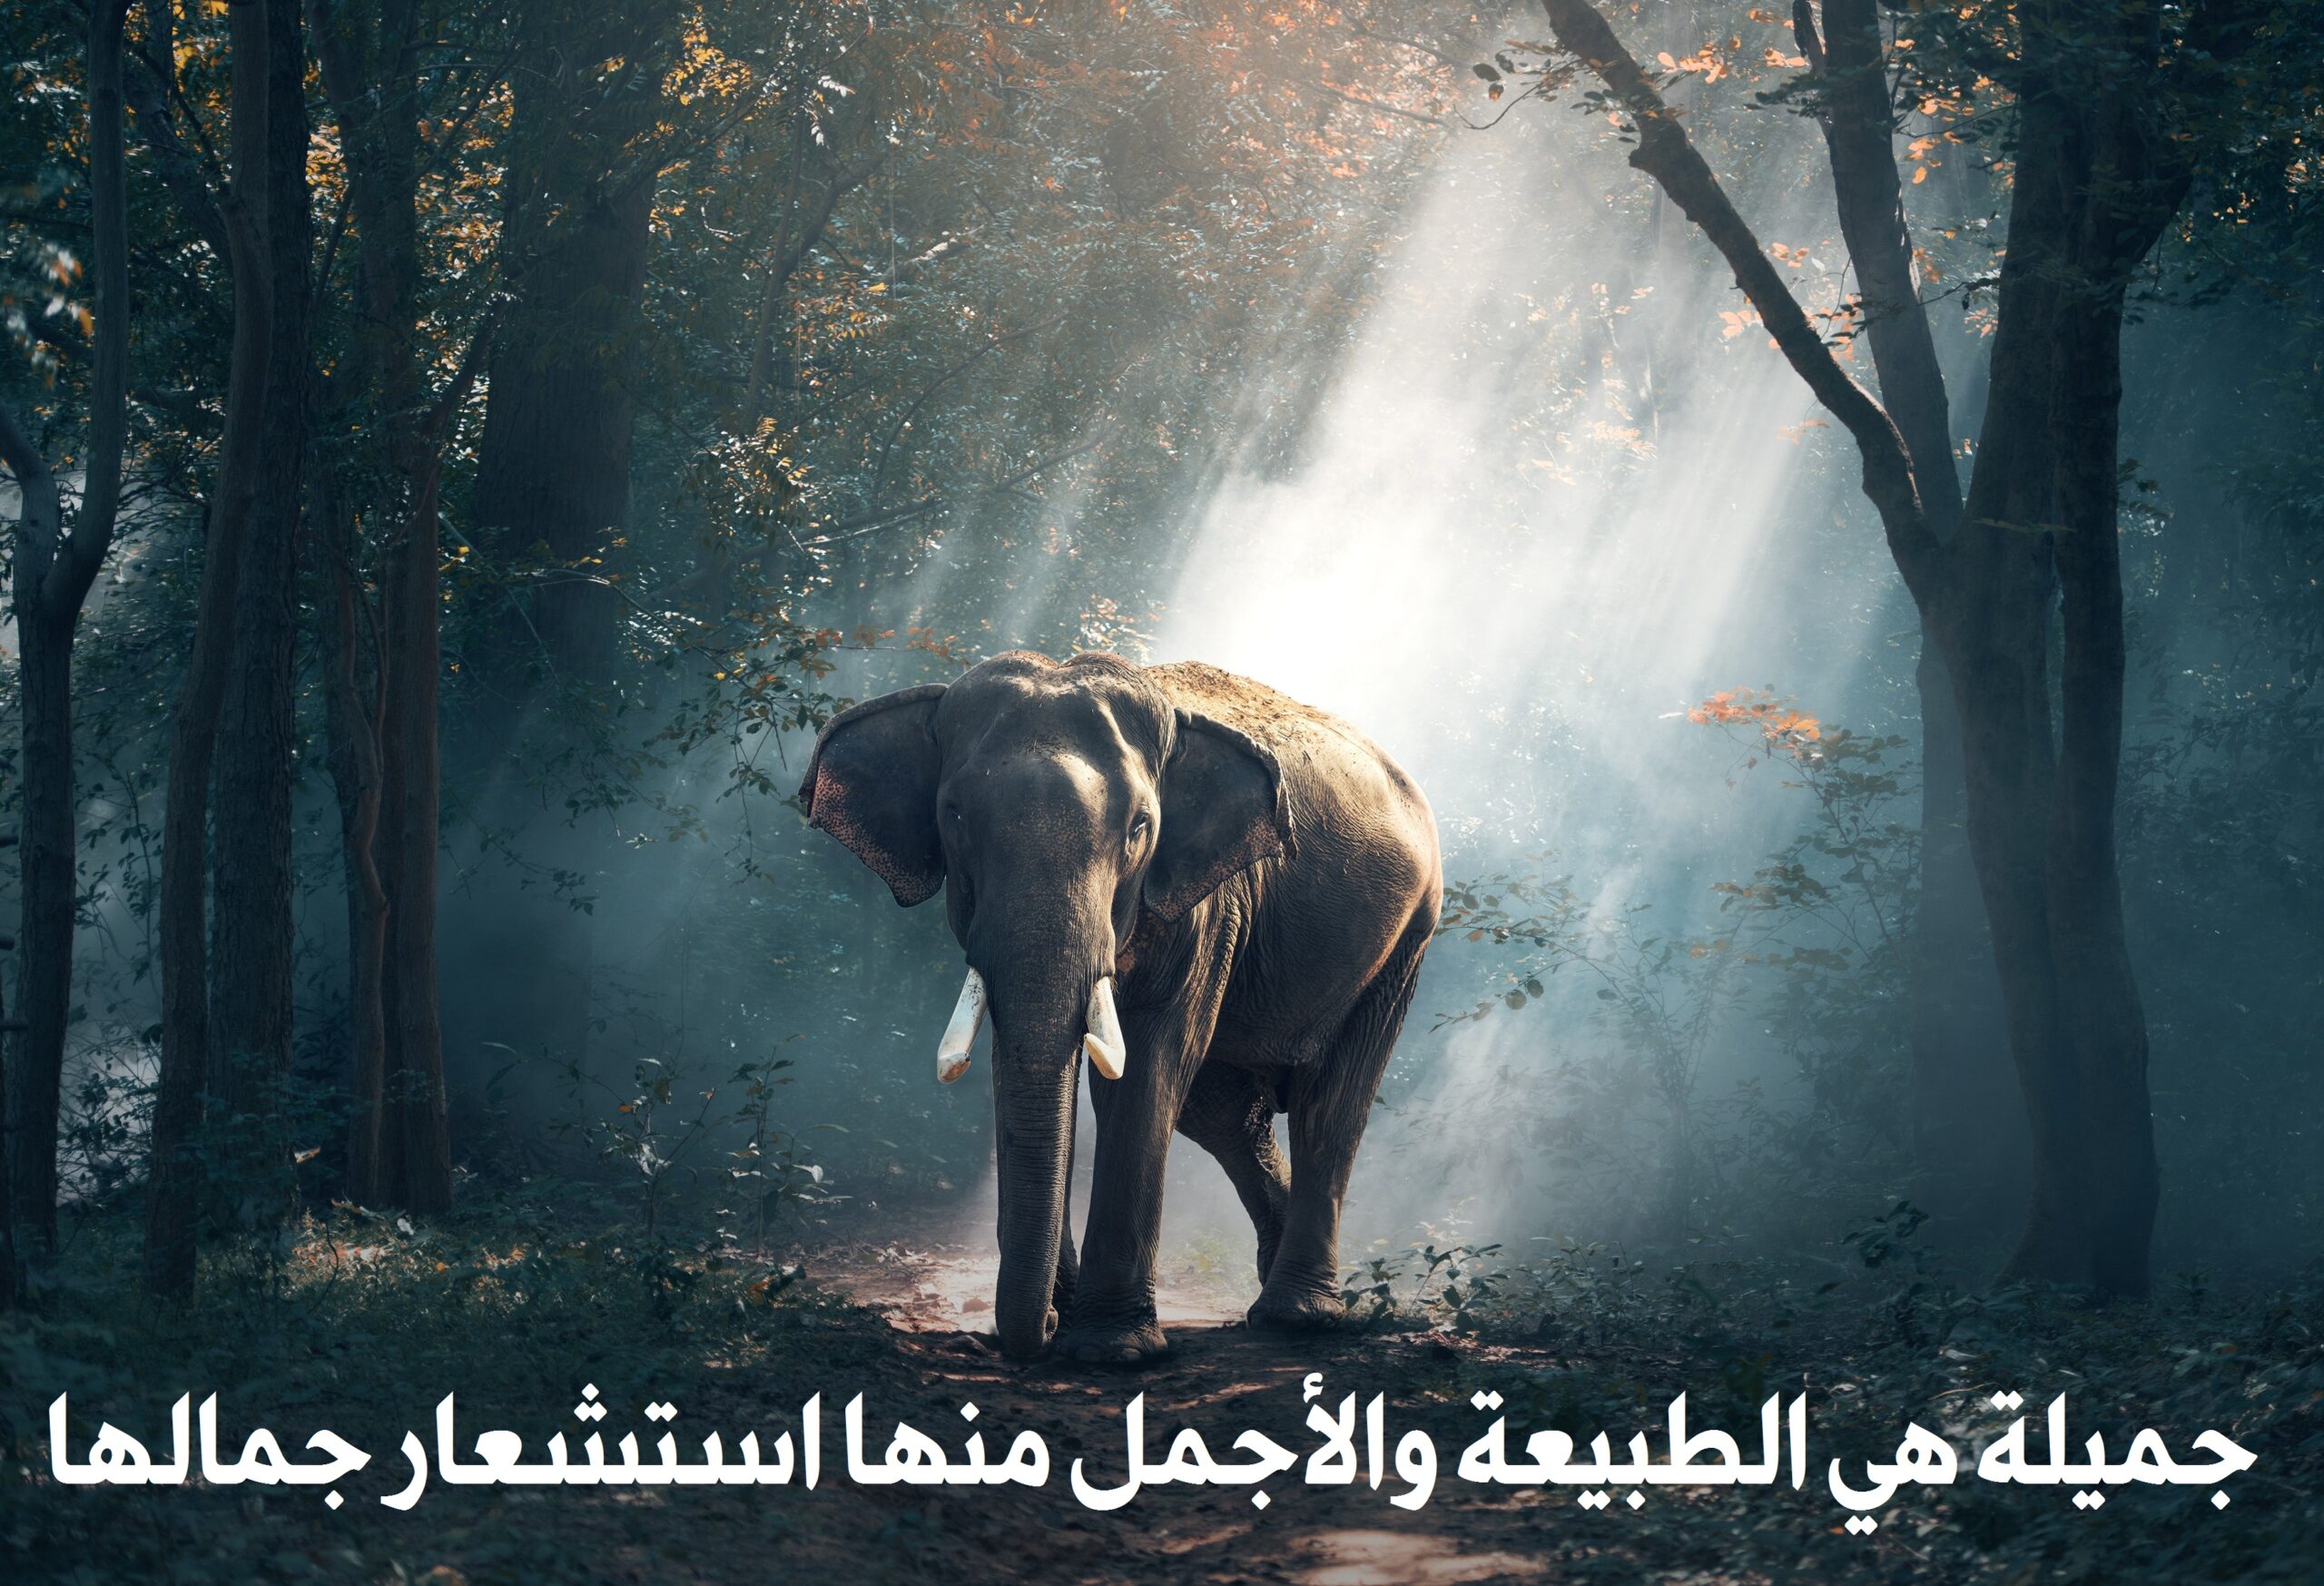 صورة جميلة في الطبيعة في الغابة ووجود فيل ضخم 